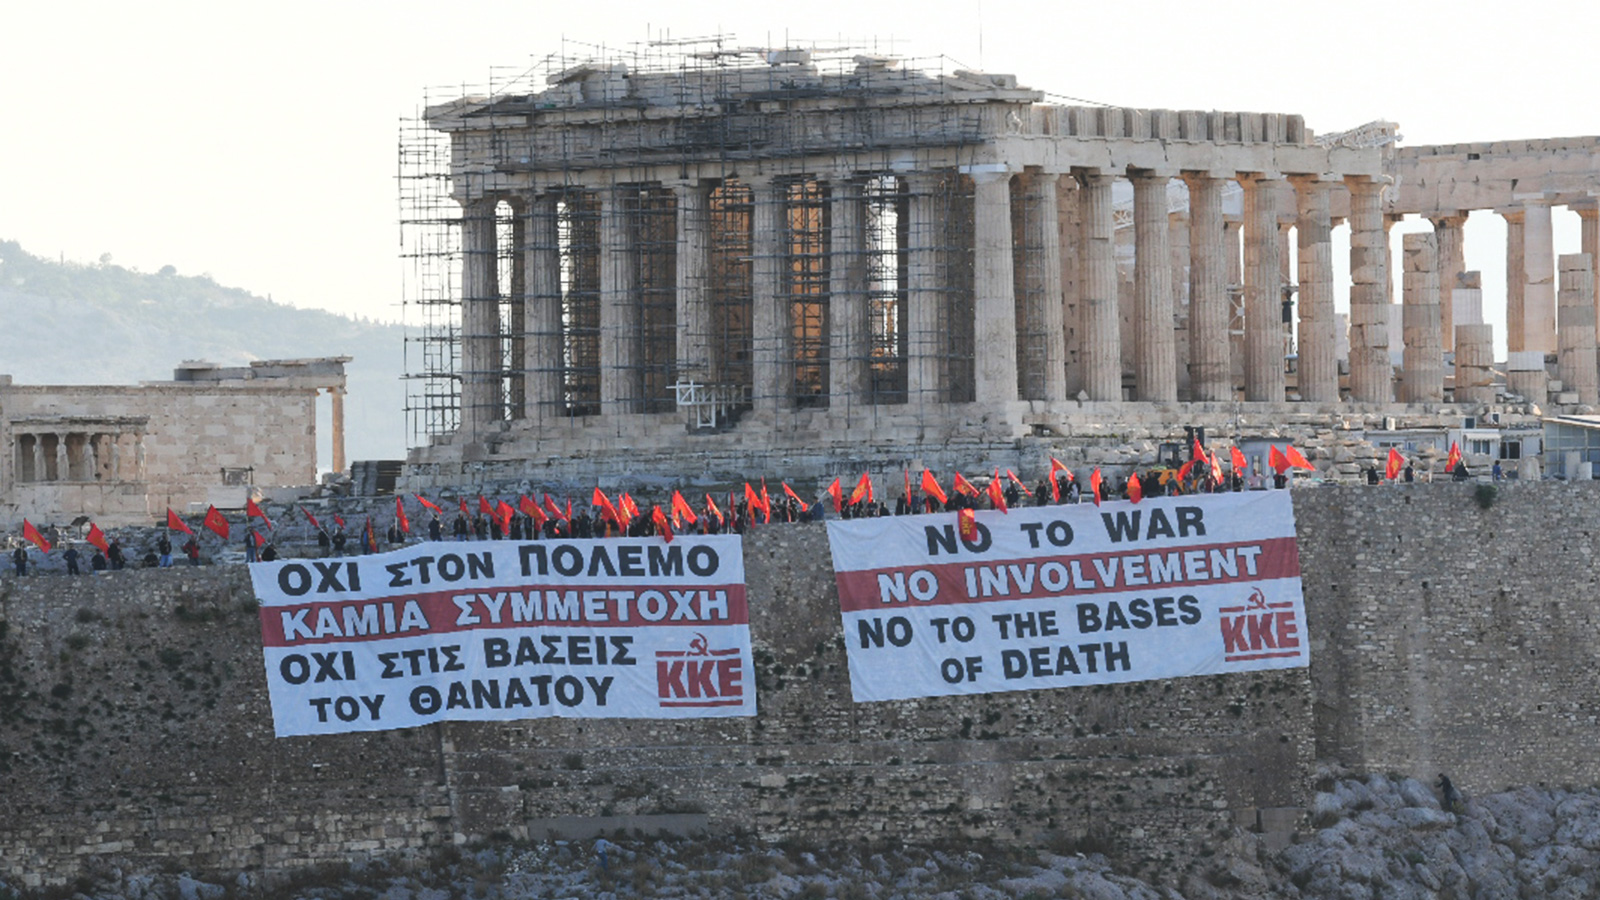 Το ΚΚΕ κρέμασε πανό στην Ακρόπολη: «Όχι στον πόλεμο, έξω οι βάσεις του θανάτου»